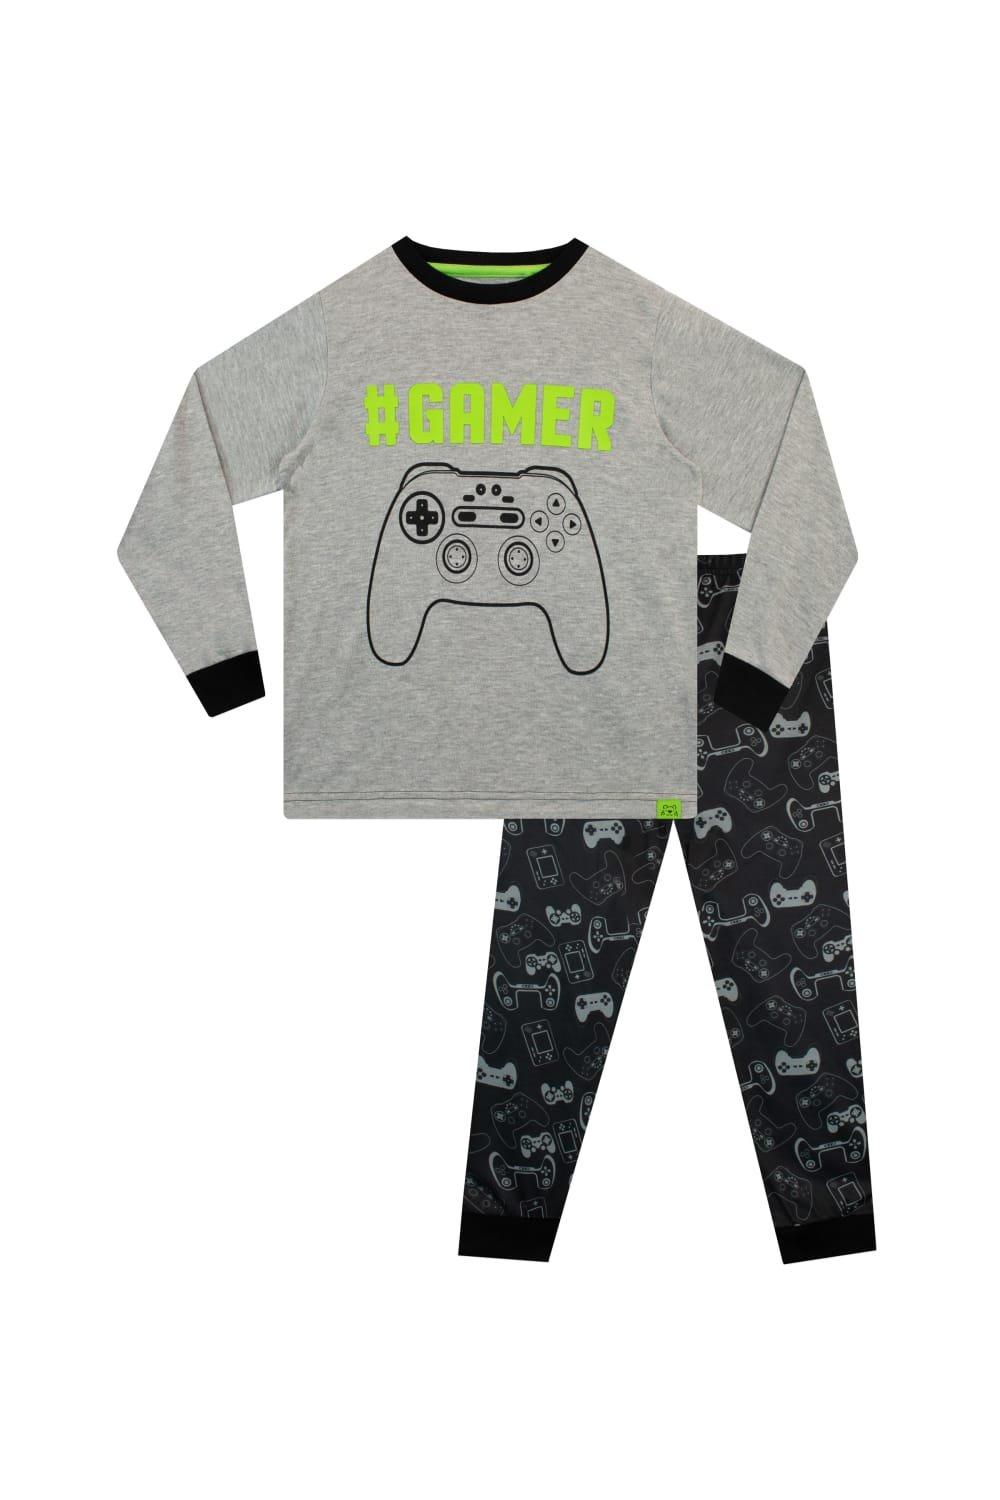 Gamer Controller Pyjamas